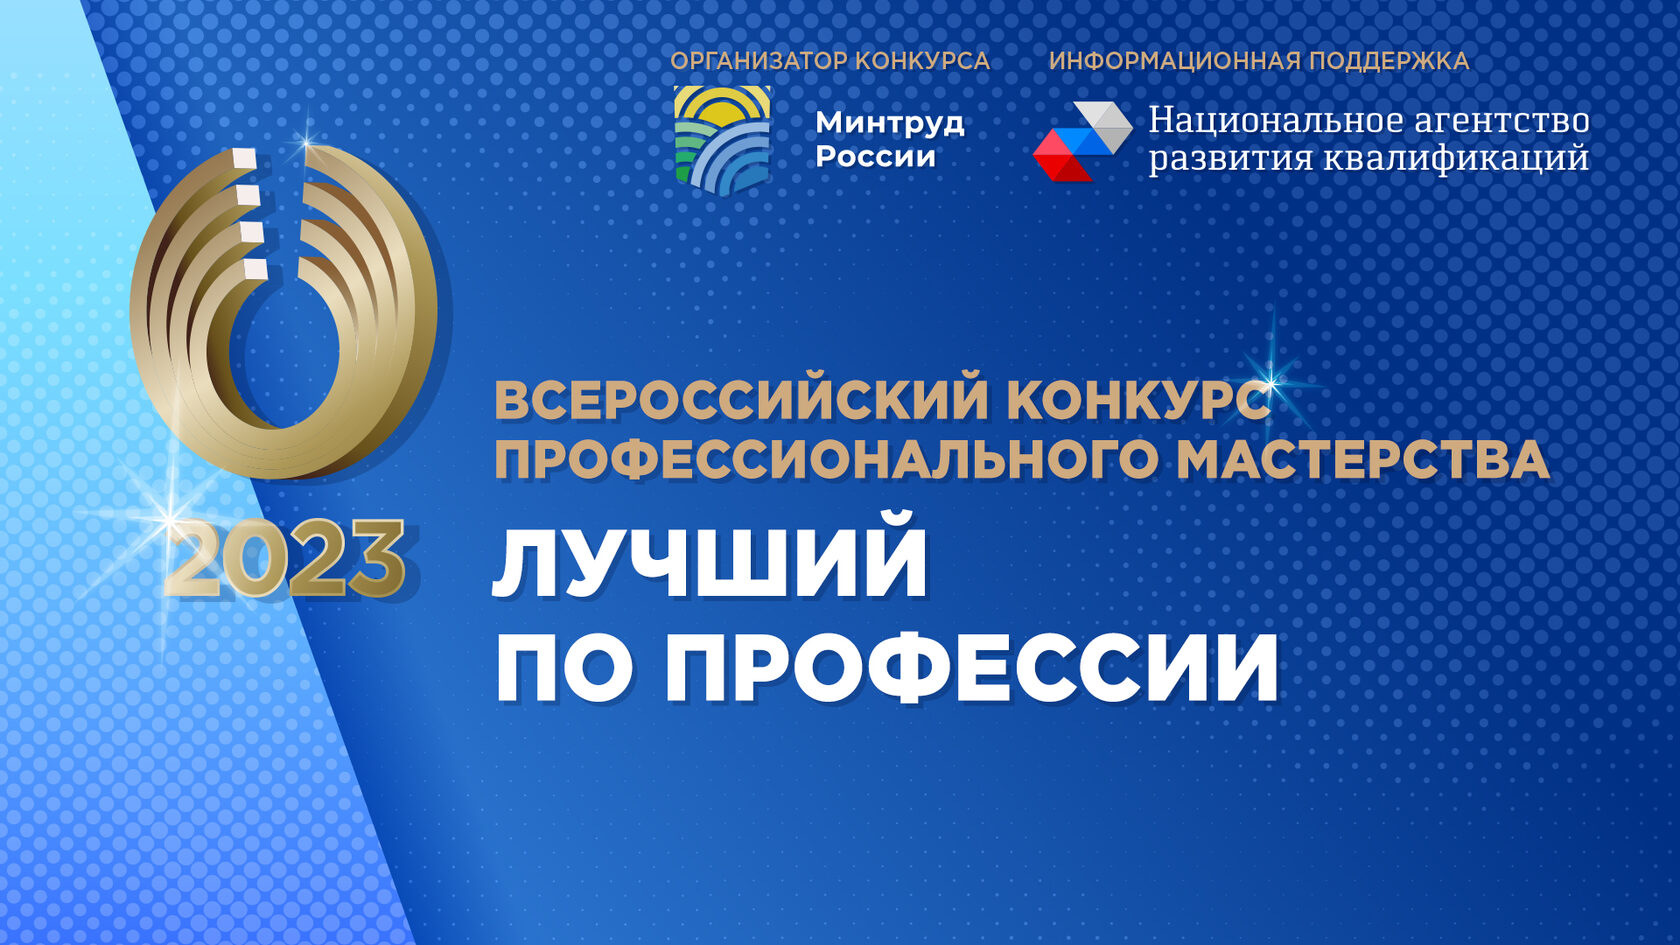 Всероссийский конкурс «Российская организация высокой социальной эффективности» – 2017